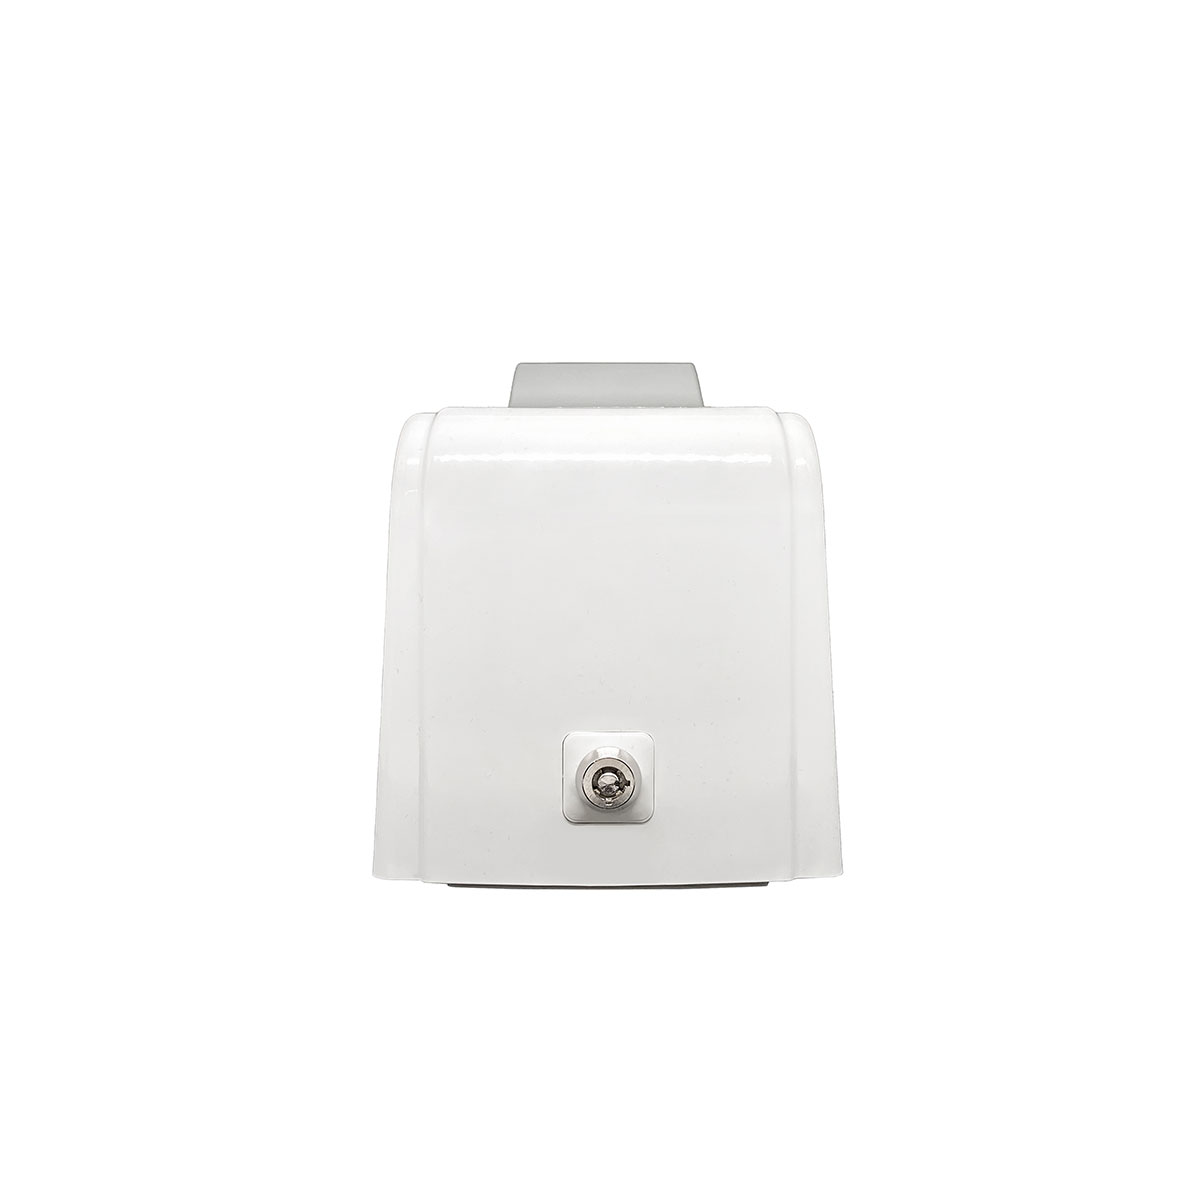 Дозатор для пены X7 нажимной 0,7 л БИЗНЕС, корпус белый, стекла и кнопка прозрачные фото 3